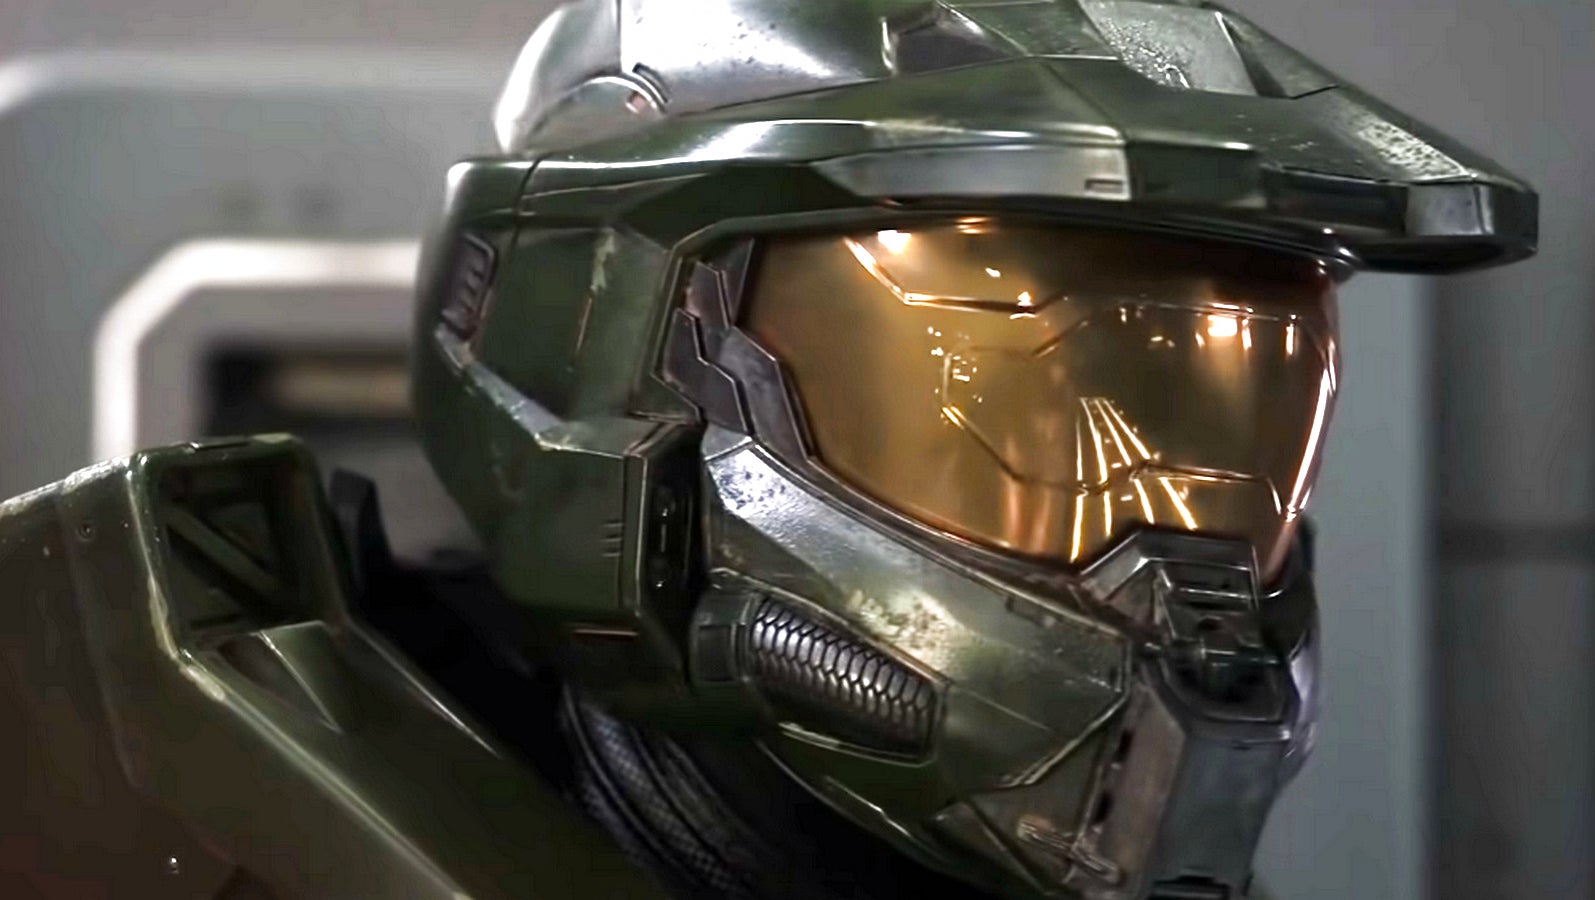 Bilder zu Eine zweite Staffel der Halo-Serie ist bereits bestellt